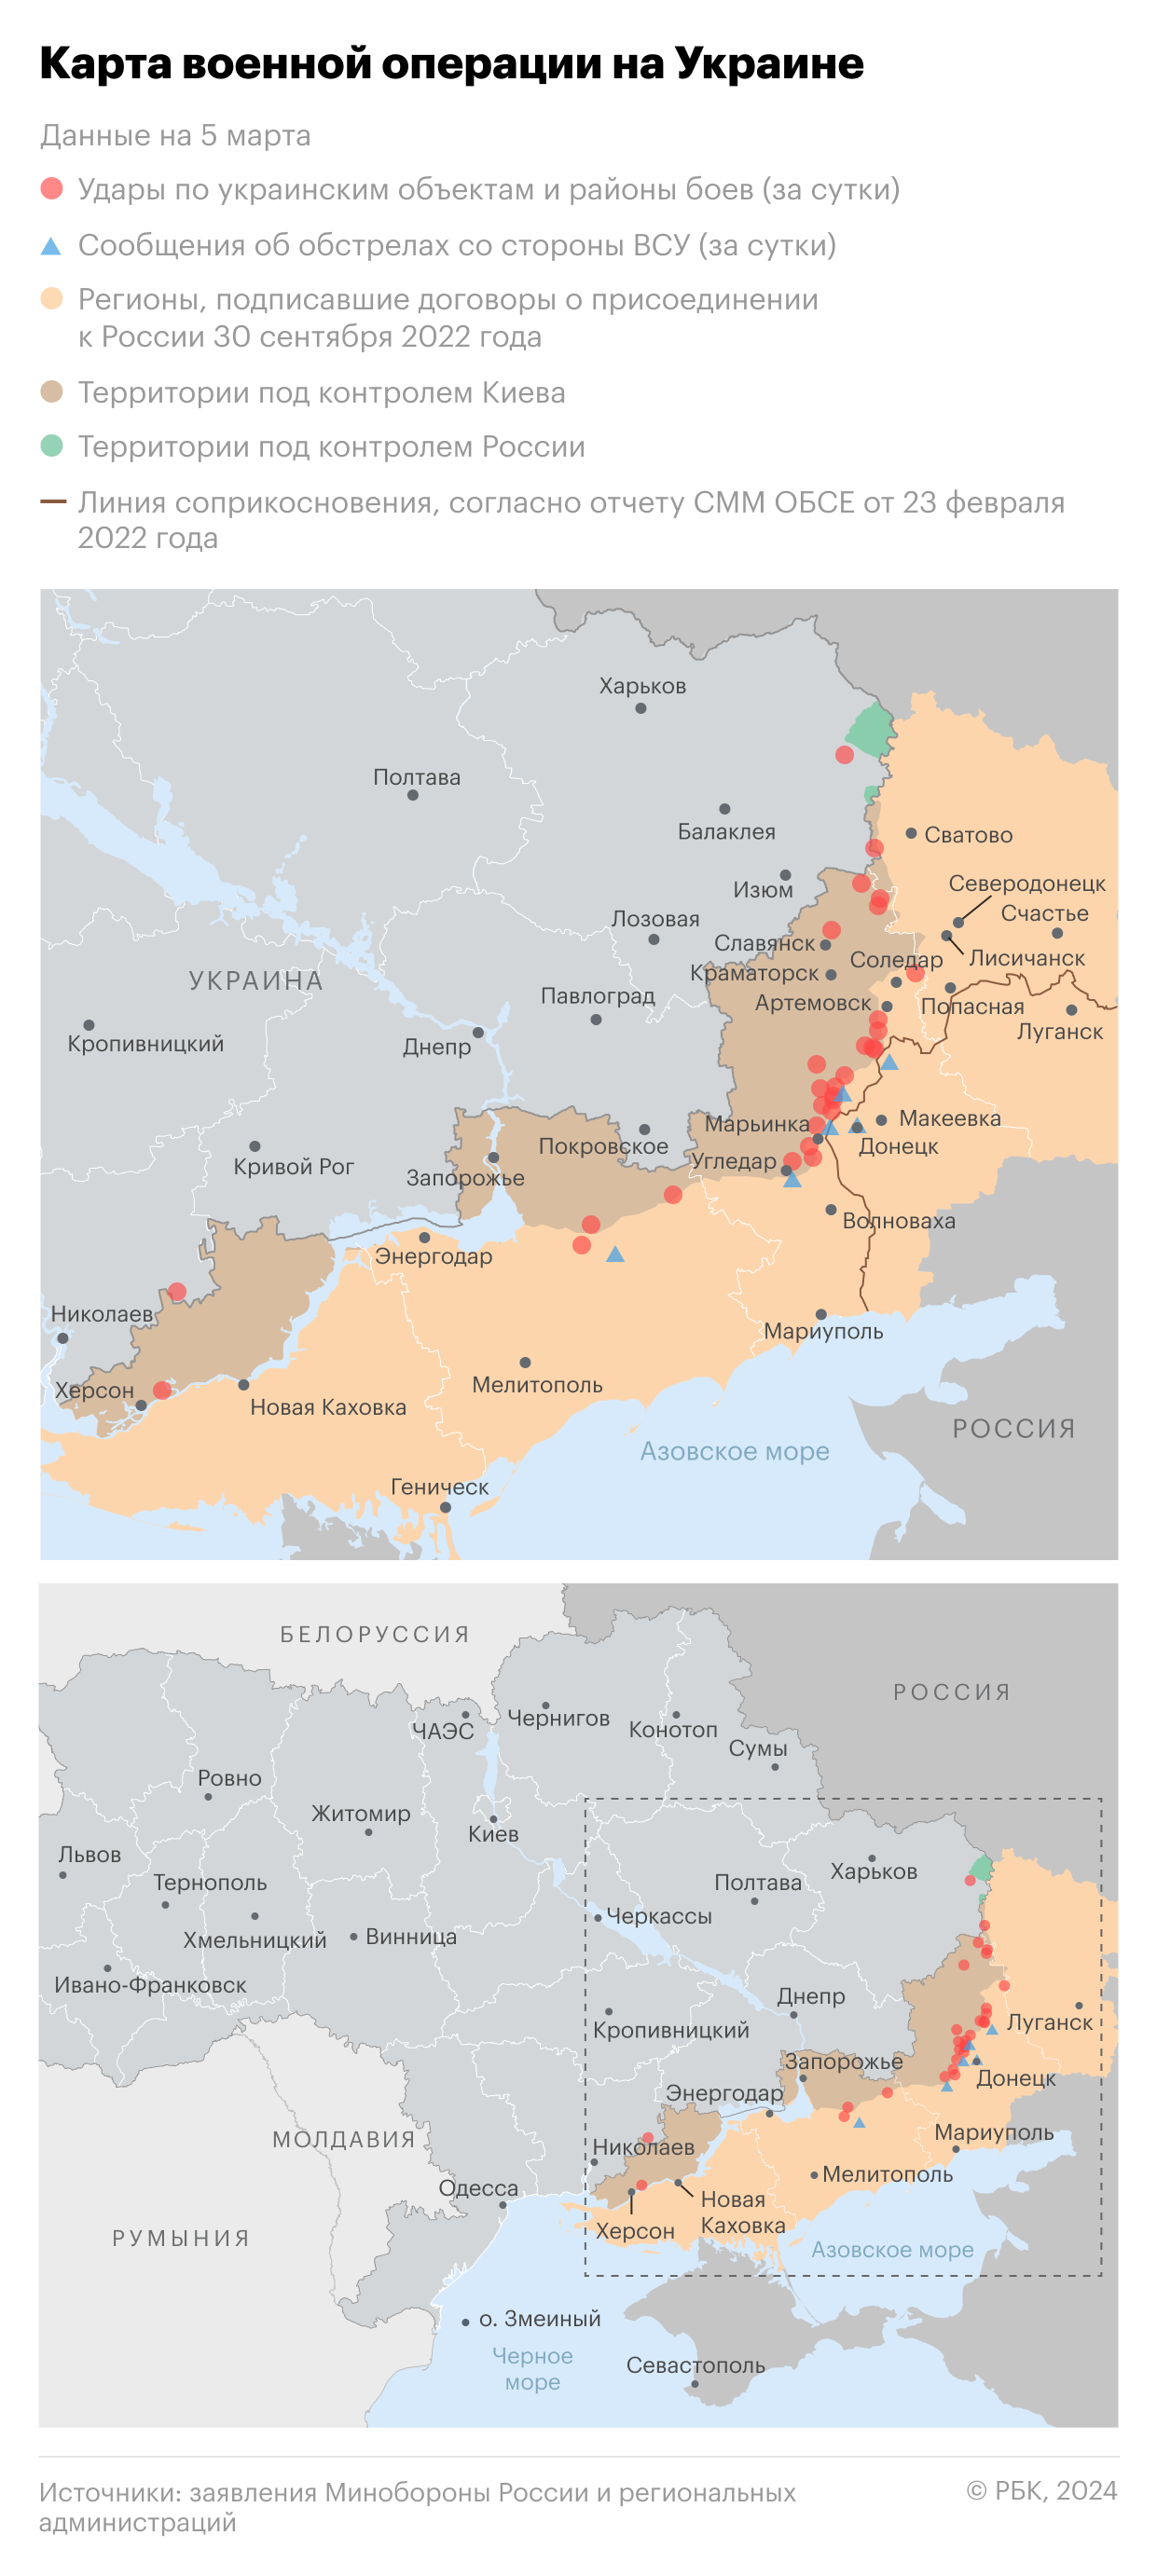 Военная операция на Украине. Карта на 5 марта